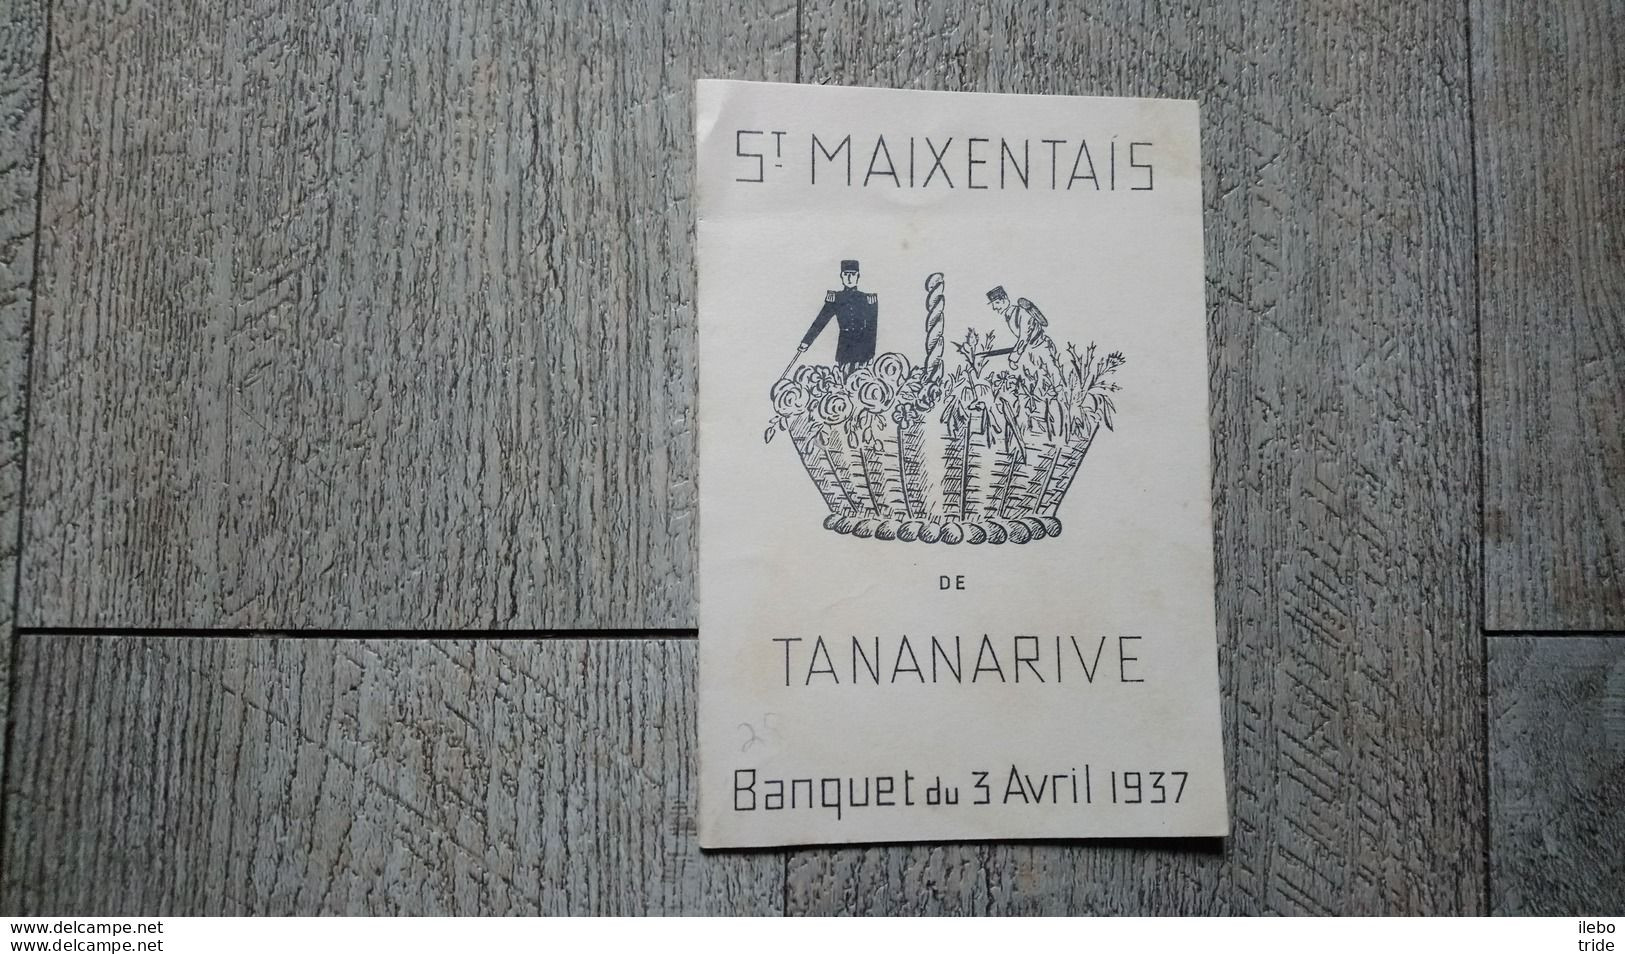 Saint Maixentais De Tananarive Banquet Du 3 Avril 1937 Menu école Militaire Madagascar - Menu